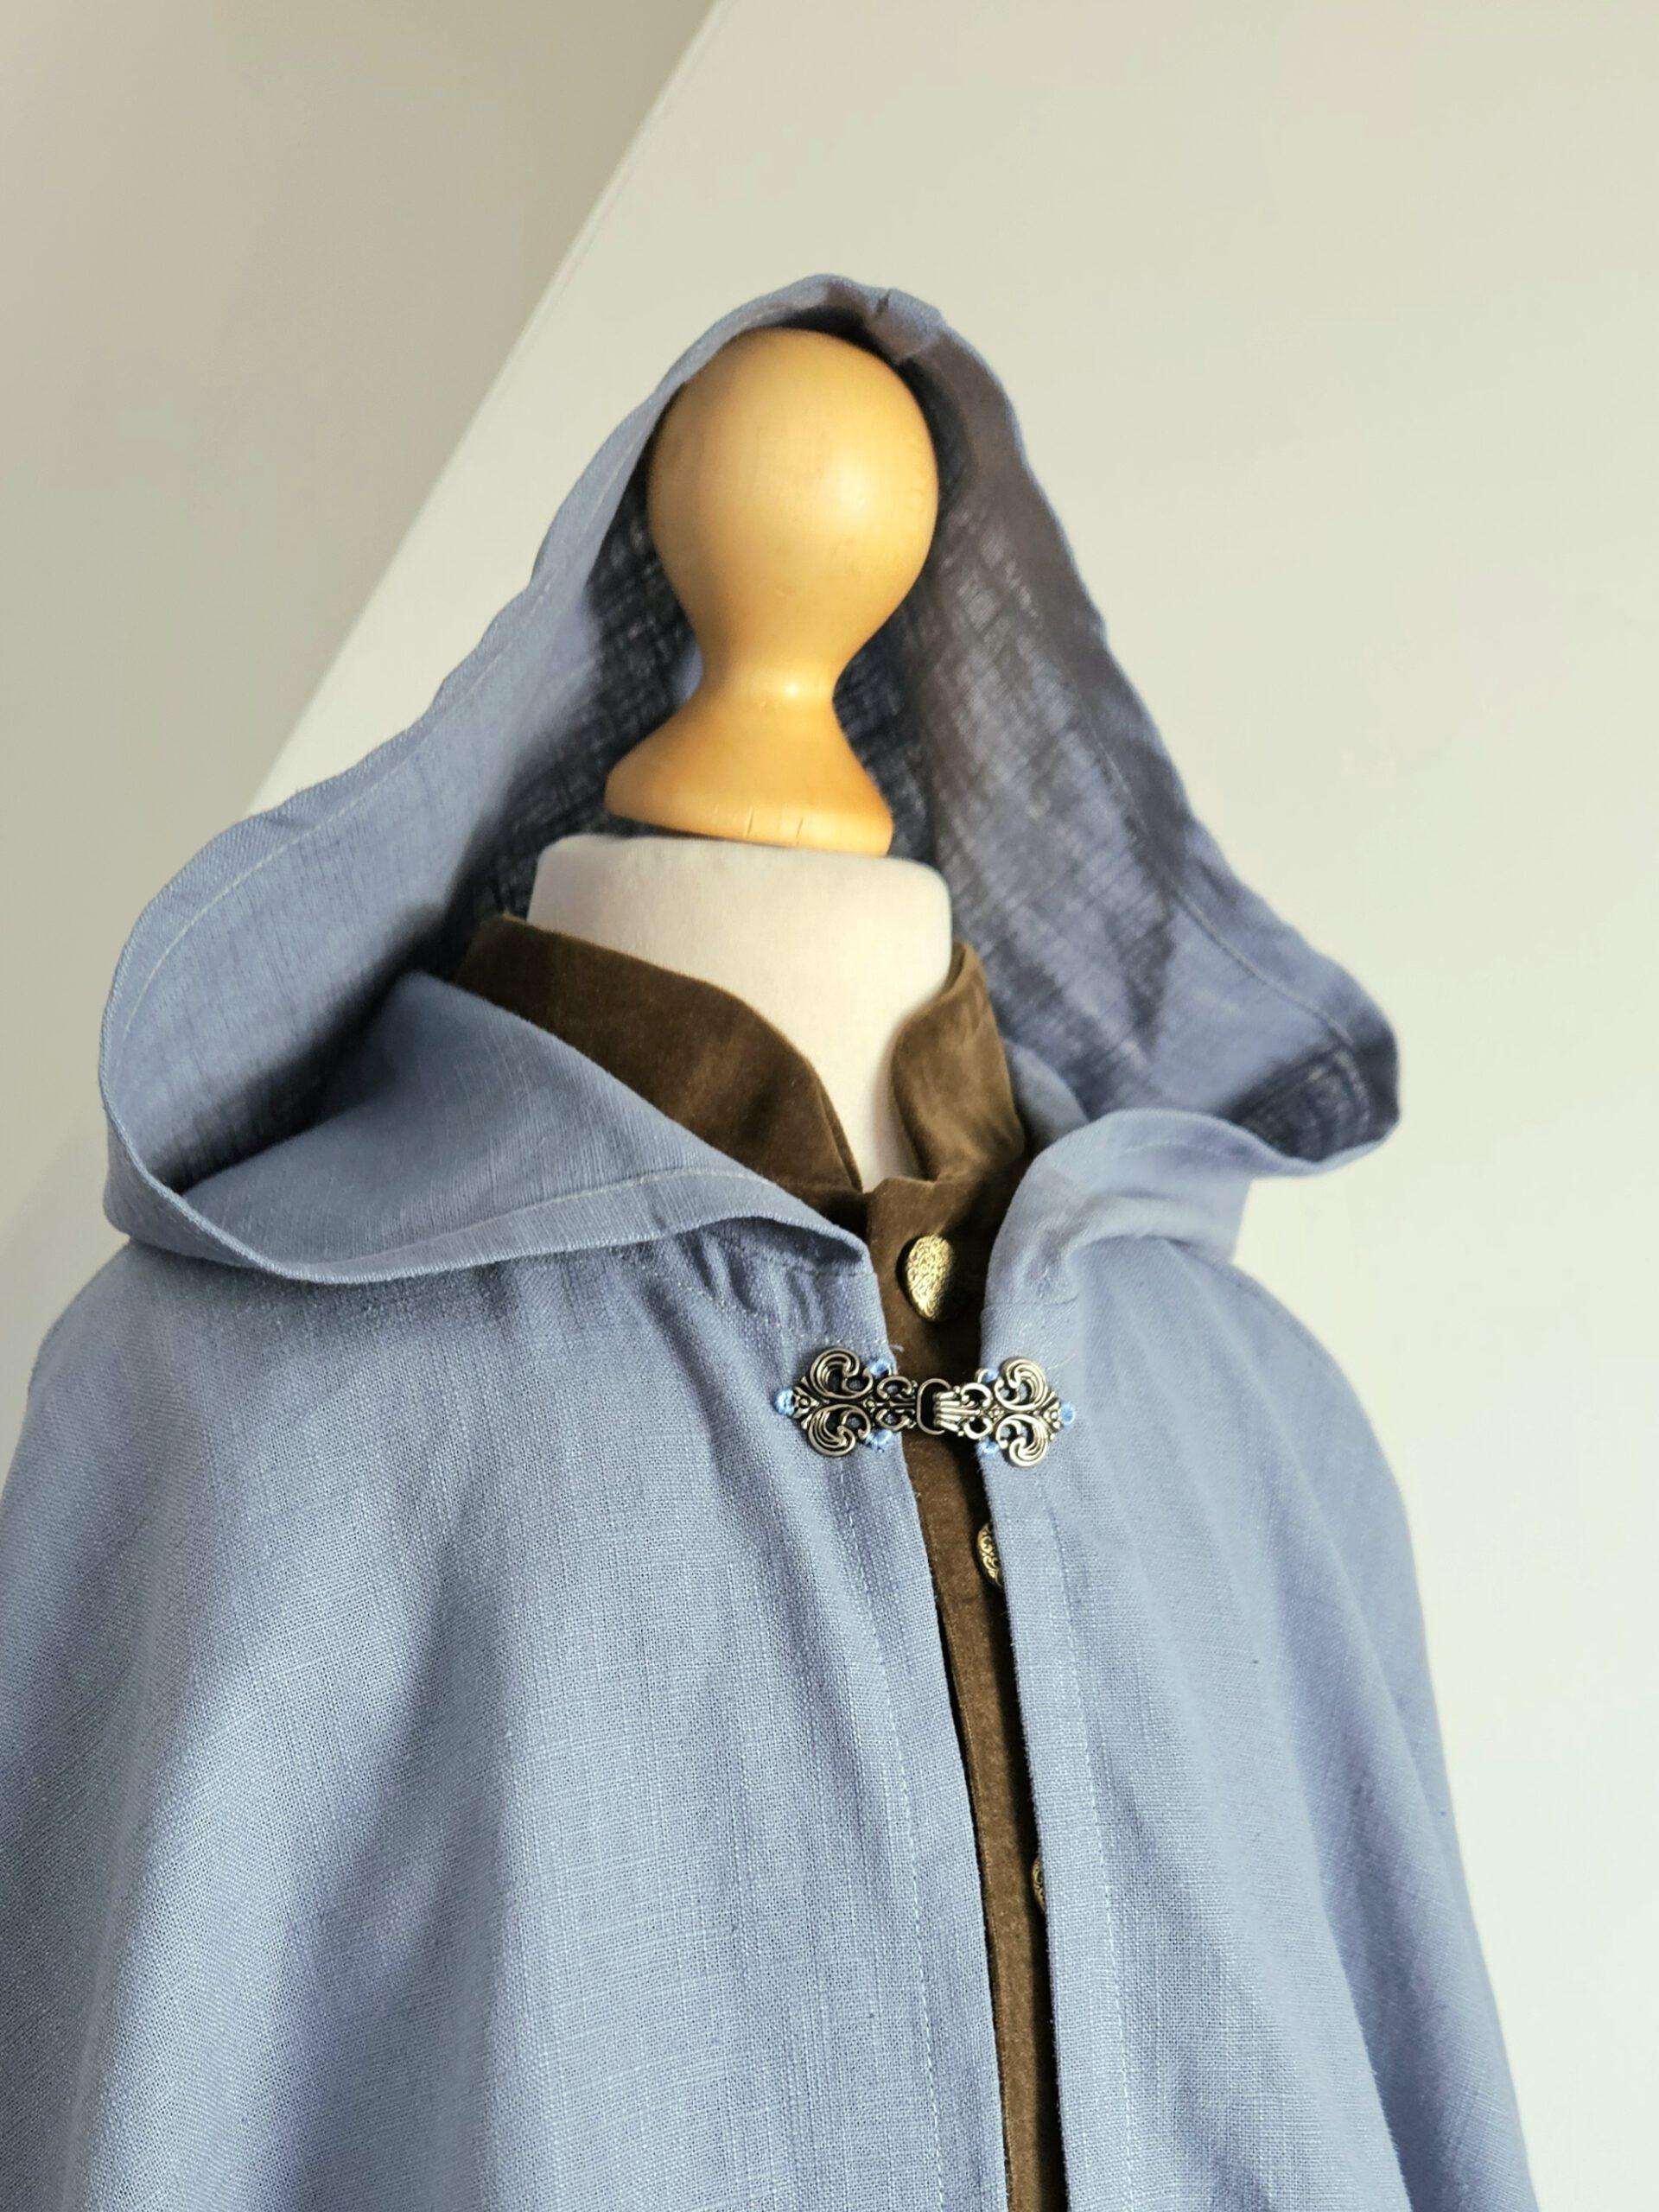 Atelier Spatz pure linen renaissance cloak cape